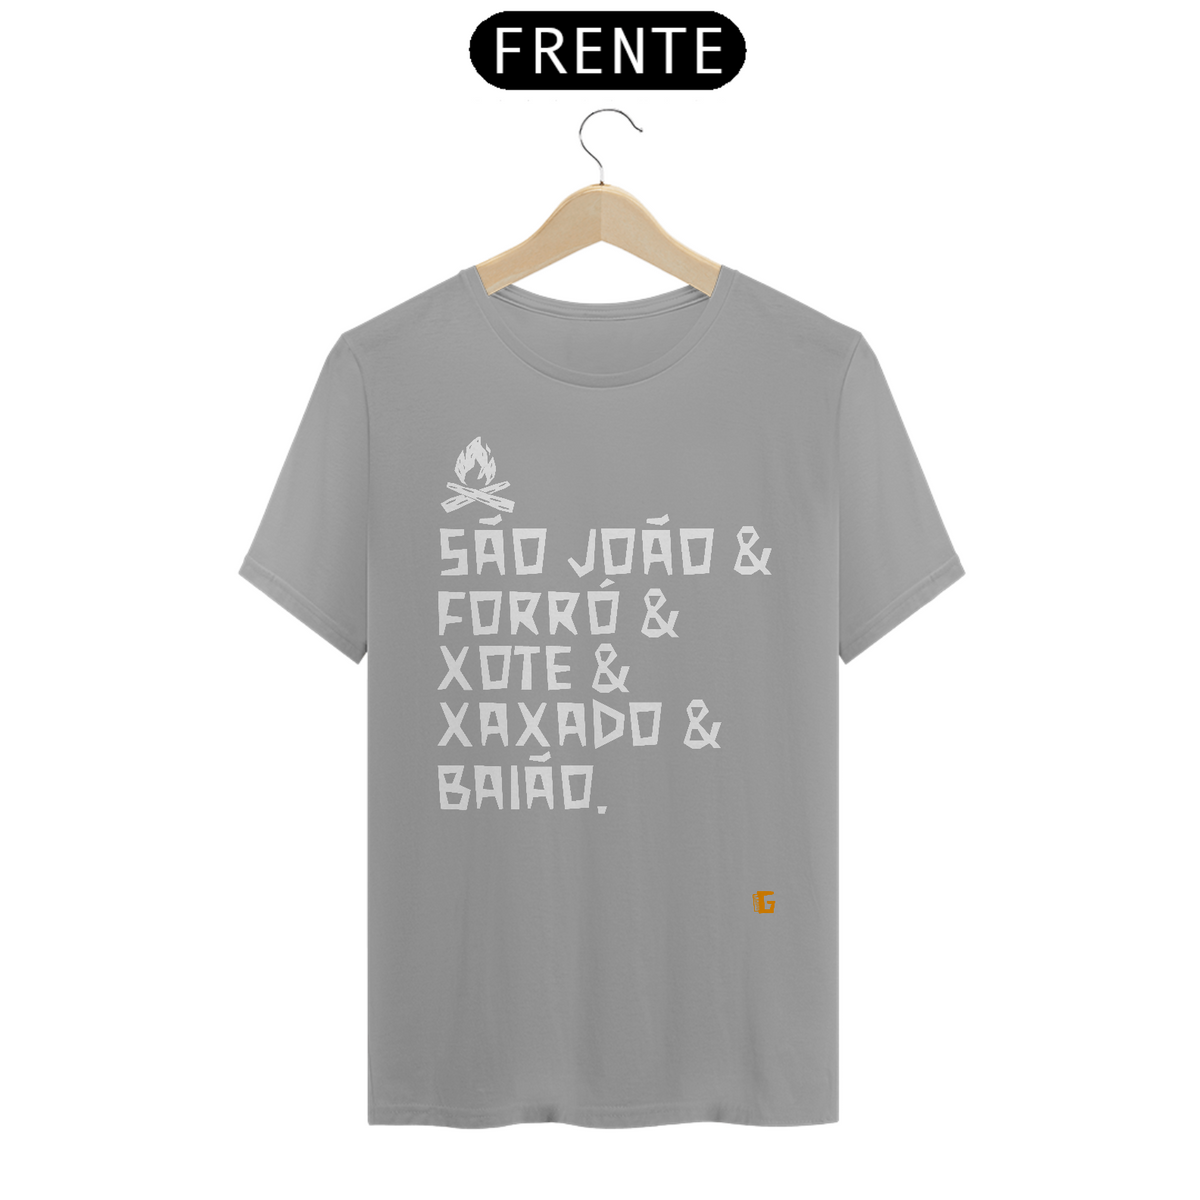 Nome do produto: Camisa Masculina São João & Forró - Texto Branco